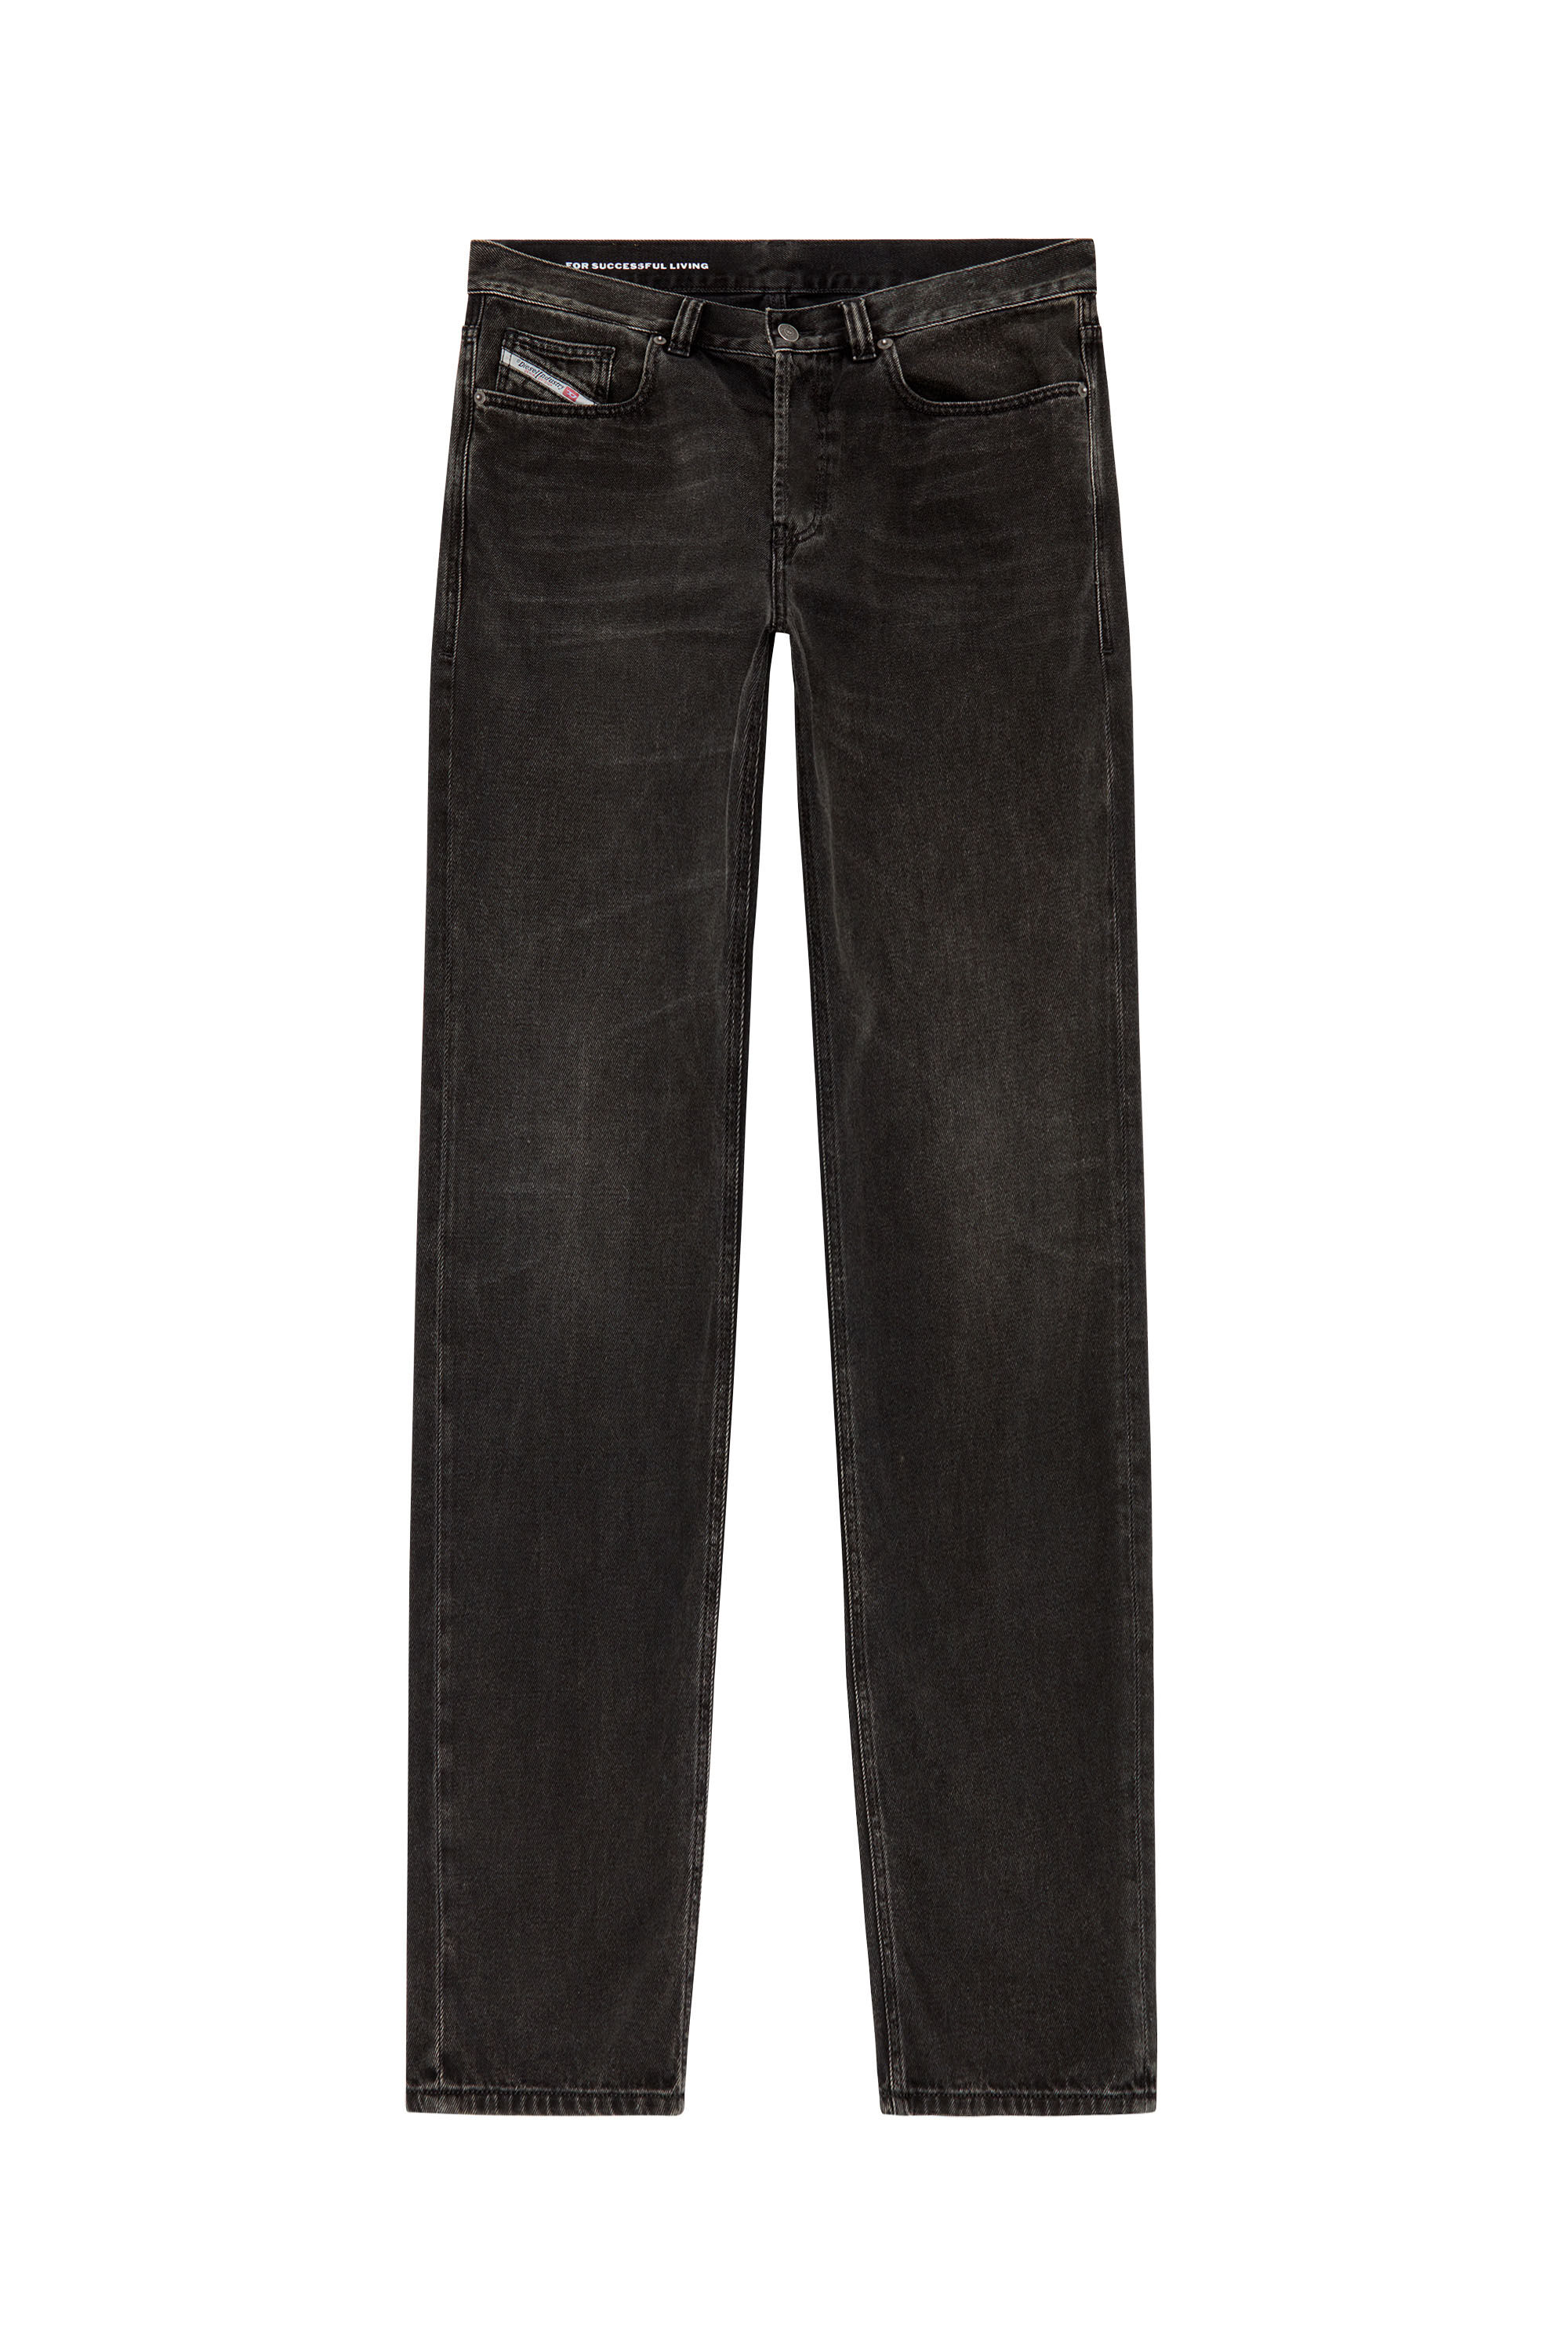 Diesel - Straight Jeans 2010 D-Macs 09J96, Black/Dark grey - Image 2